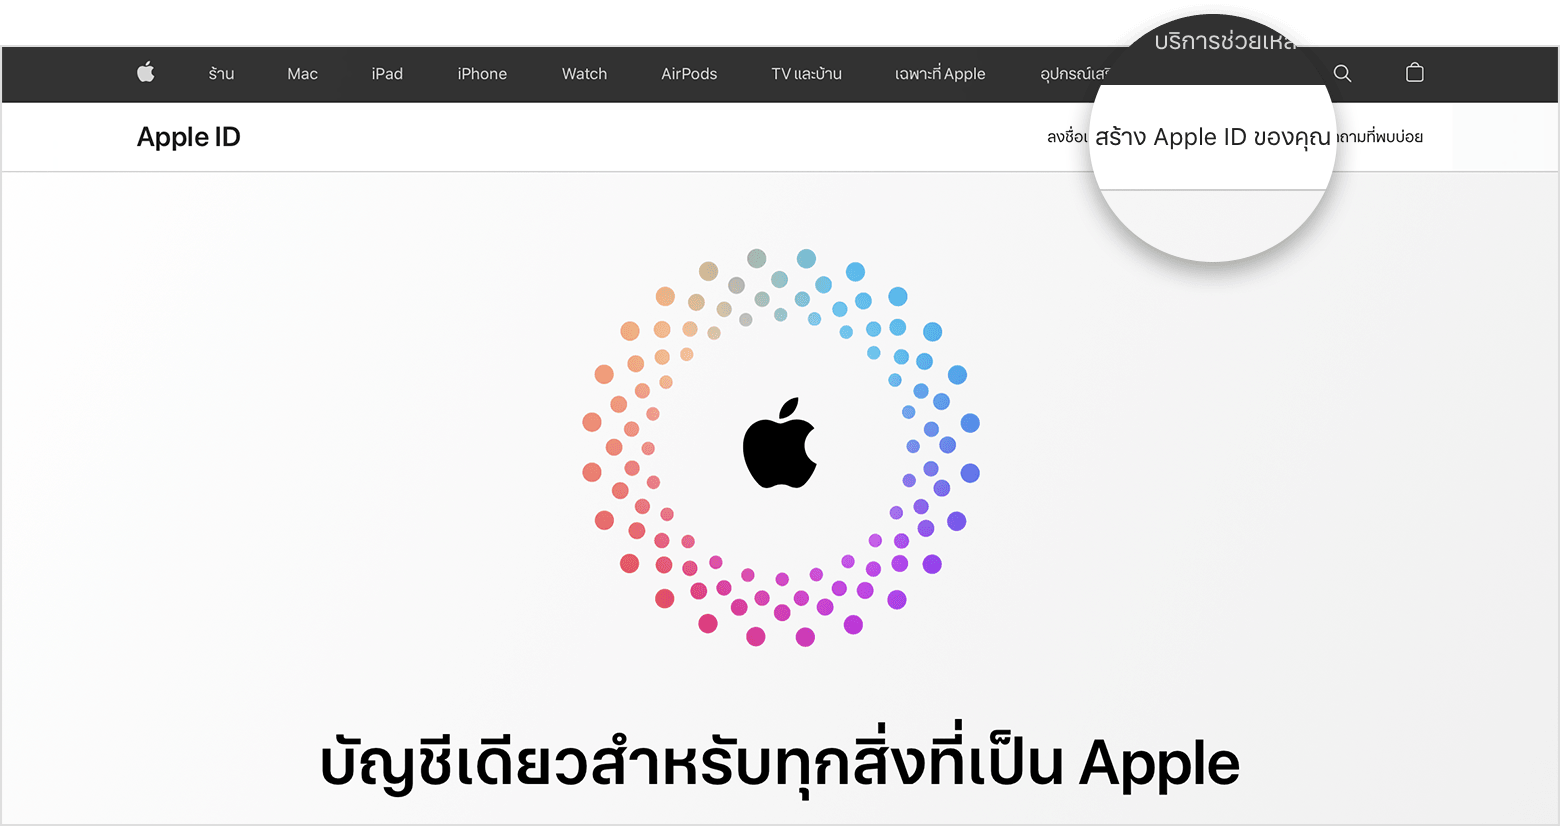 ภาพหน้าจอของ appleid.apple.com ซึ่งมีโลโก้ Apple อยู่ตรงกลางหน้าจอล้อมรอบด้วยวงกลมสีซ้อนกัน